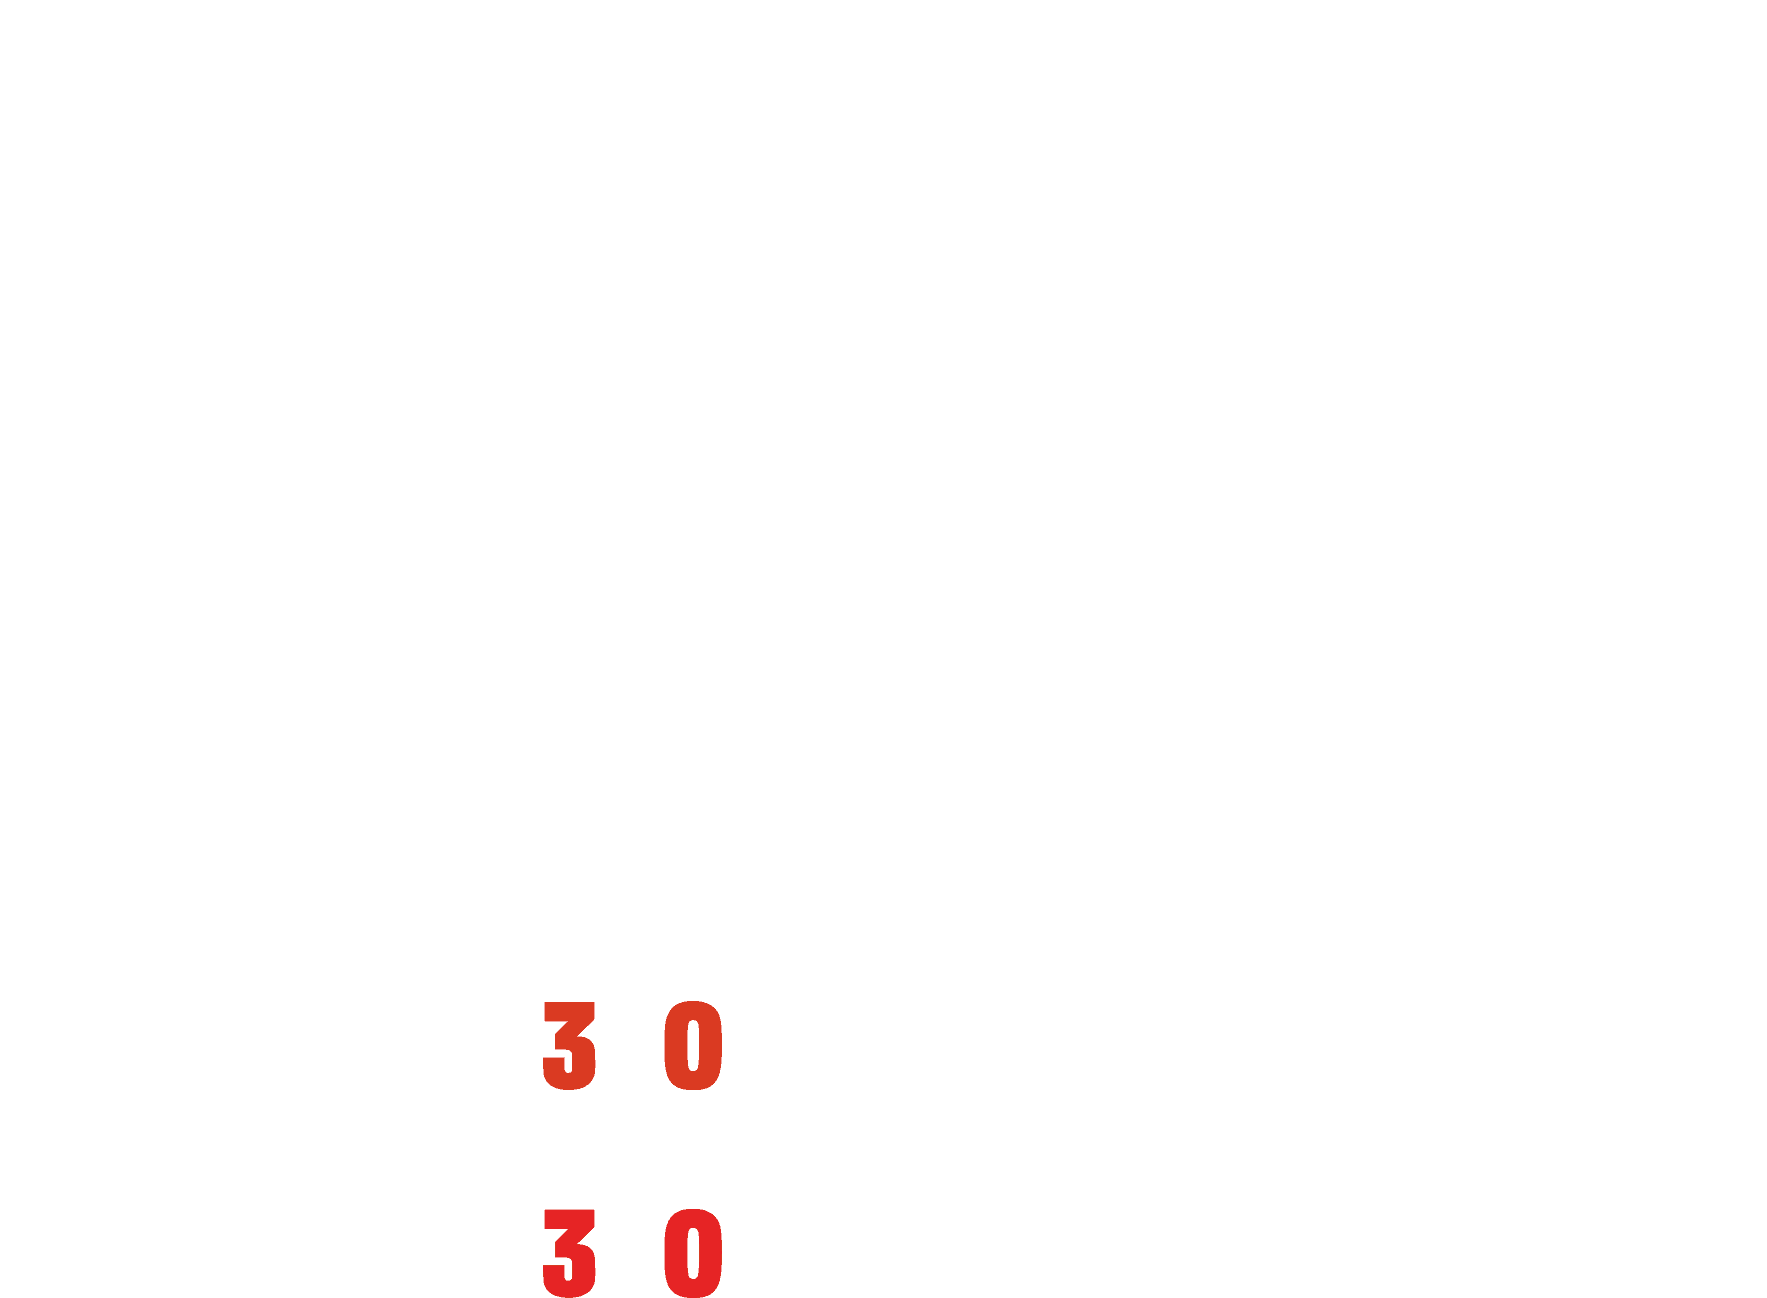 Jordan Rides the Bus logo